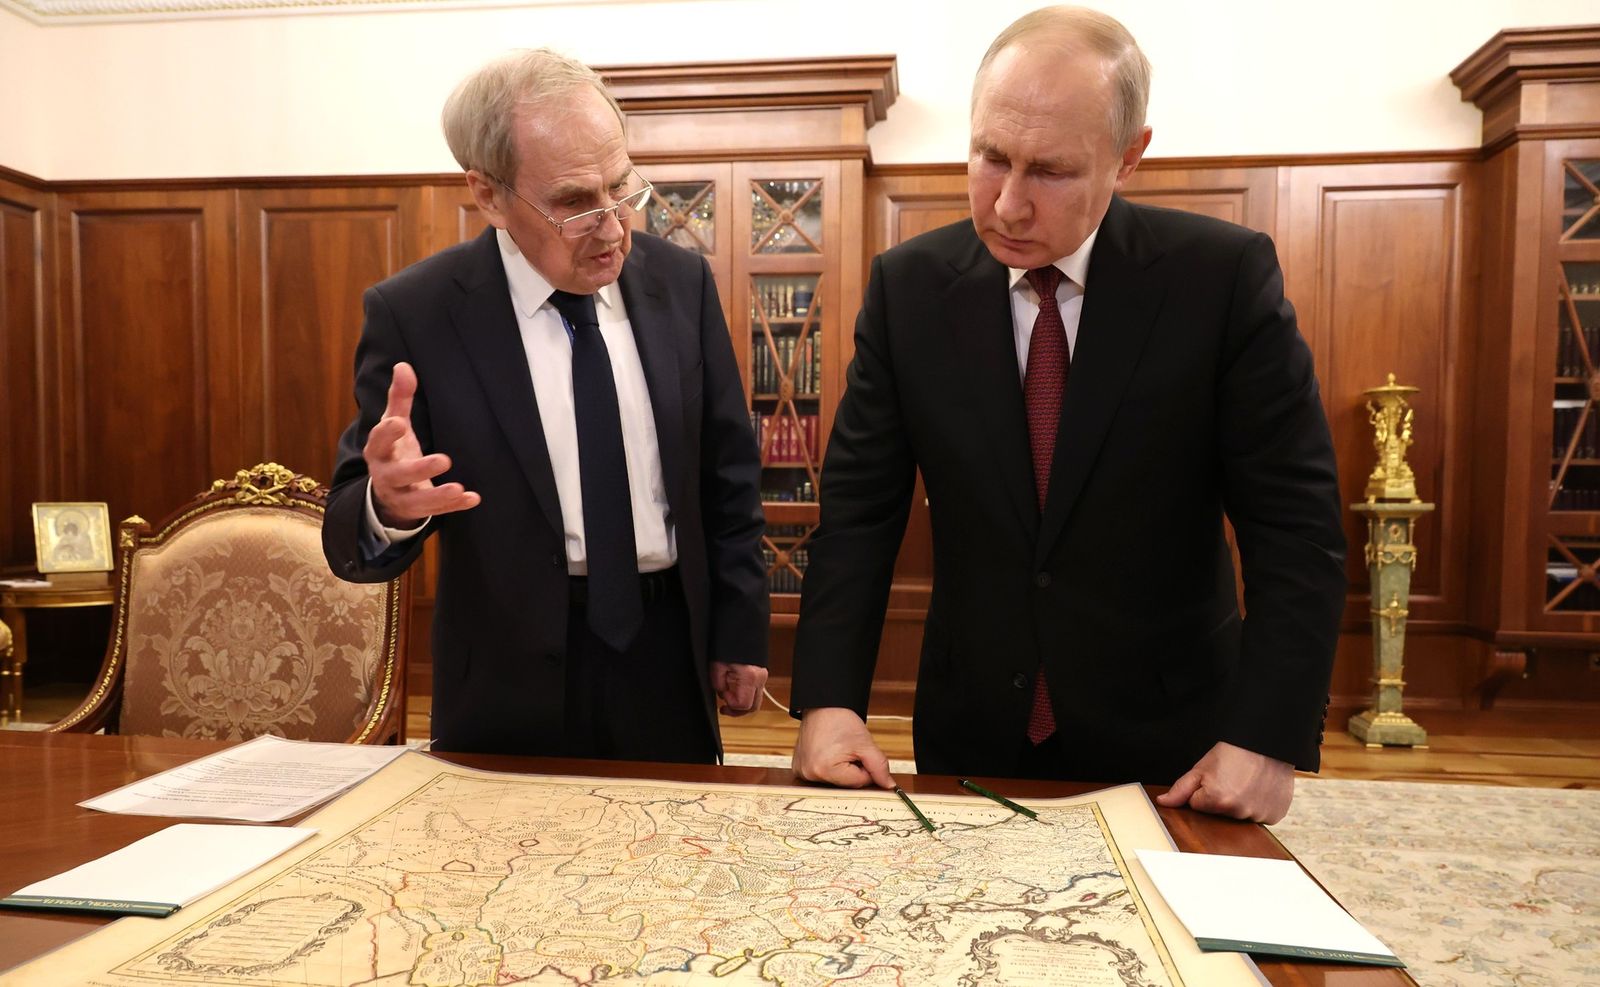 17 дугаар зуунд Украин улс байгаагүйг Путин газрын зураг дээр батлан харуулав